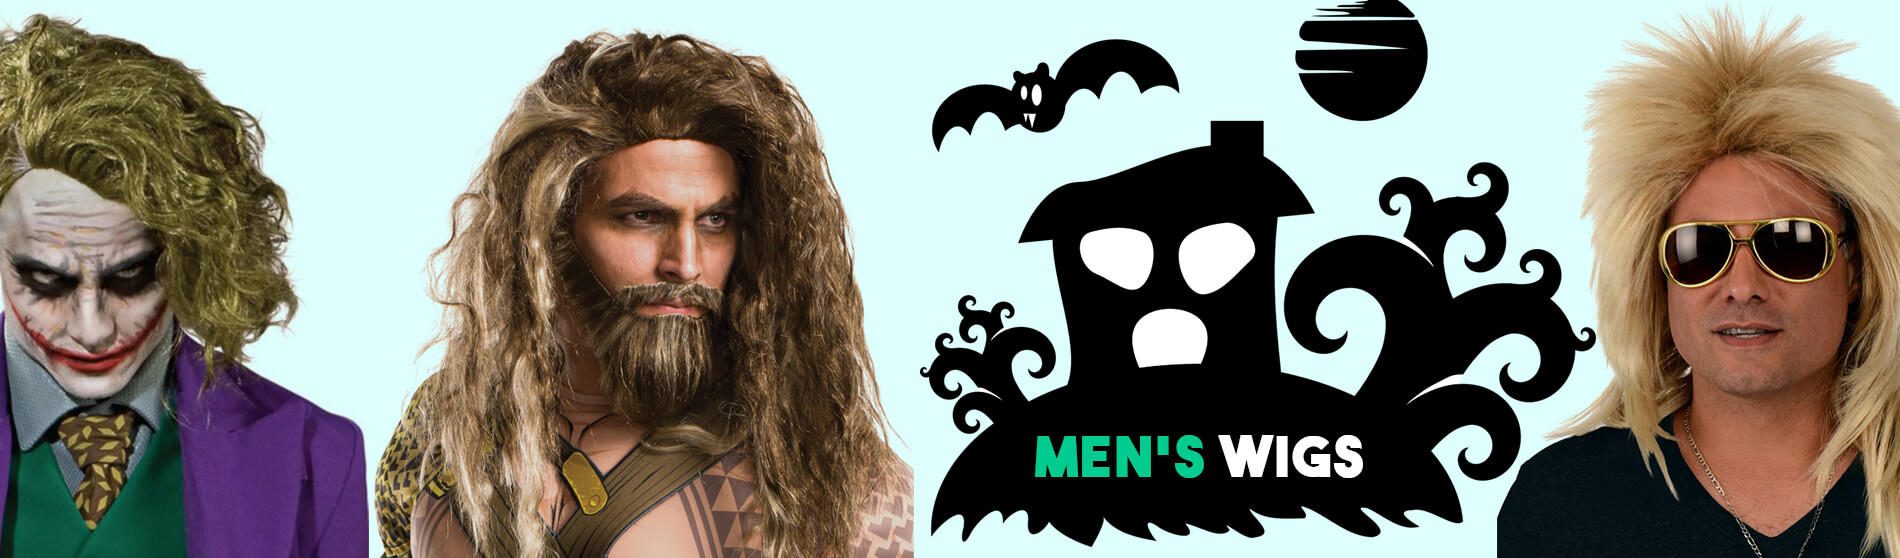 Glendale Halloween : Mens Wig